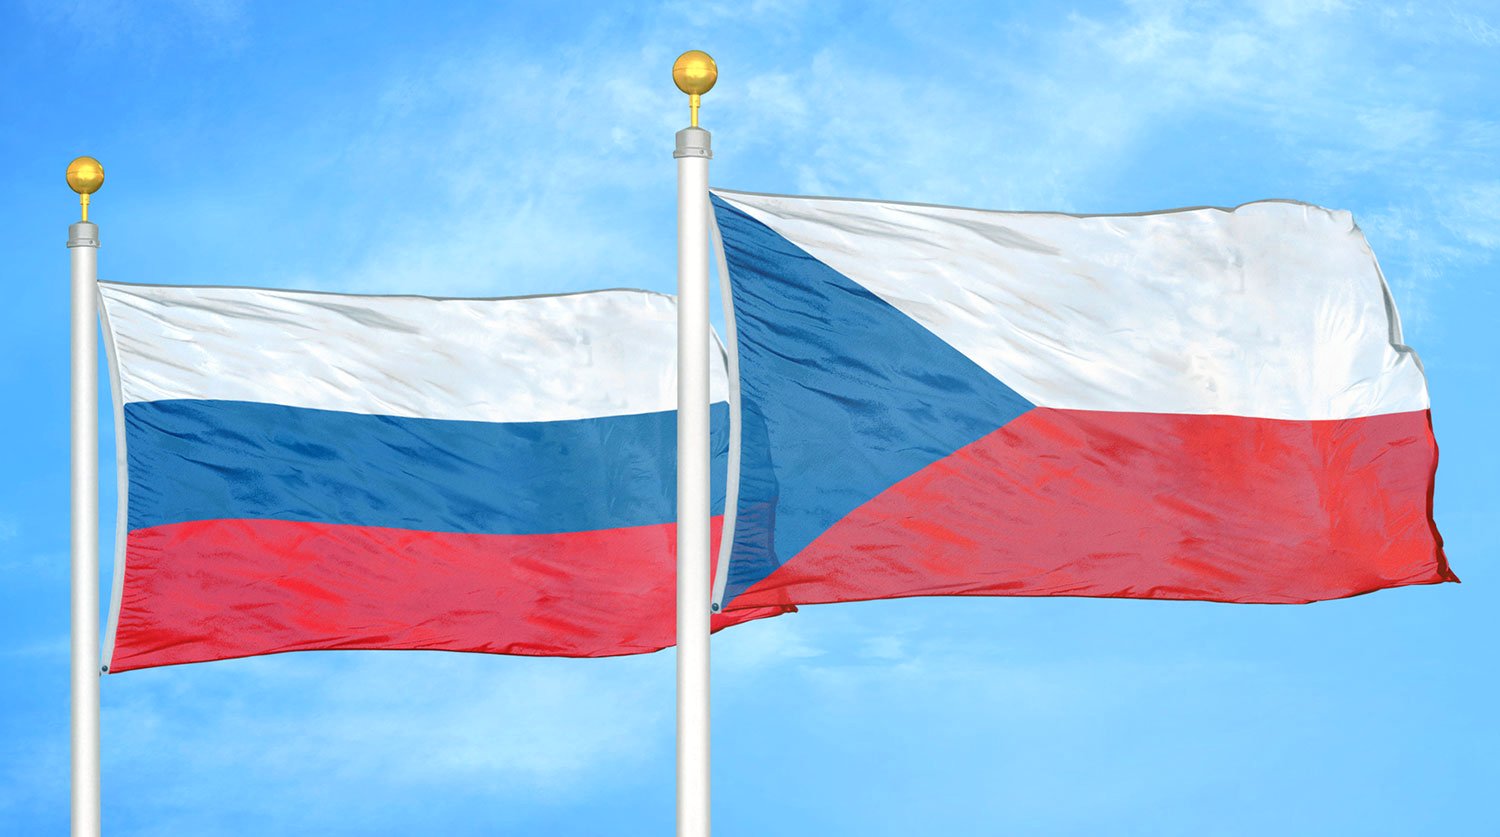 Չեխիայում Ռուսաստանն անվանել են Կենտրոնական Եվրոպայի համար մշտական սպառնալիք